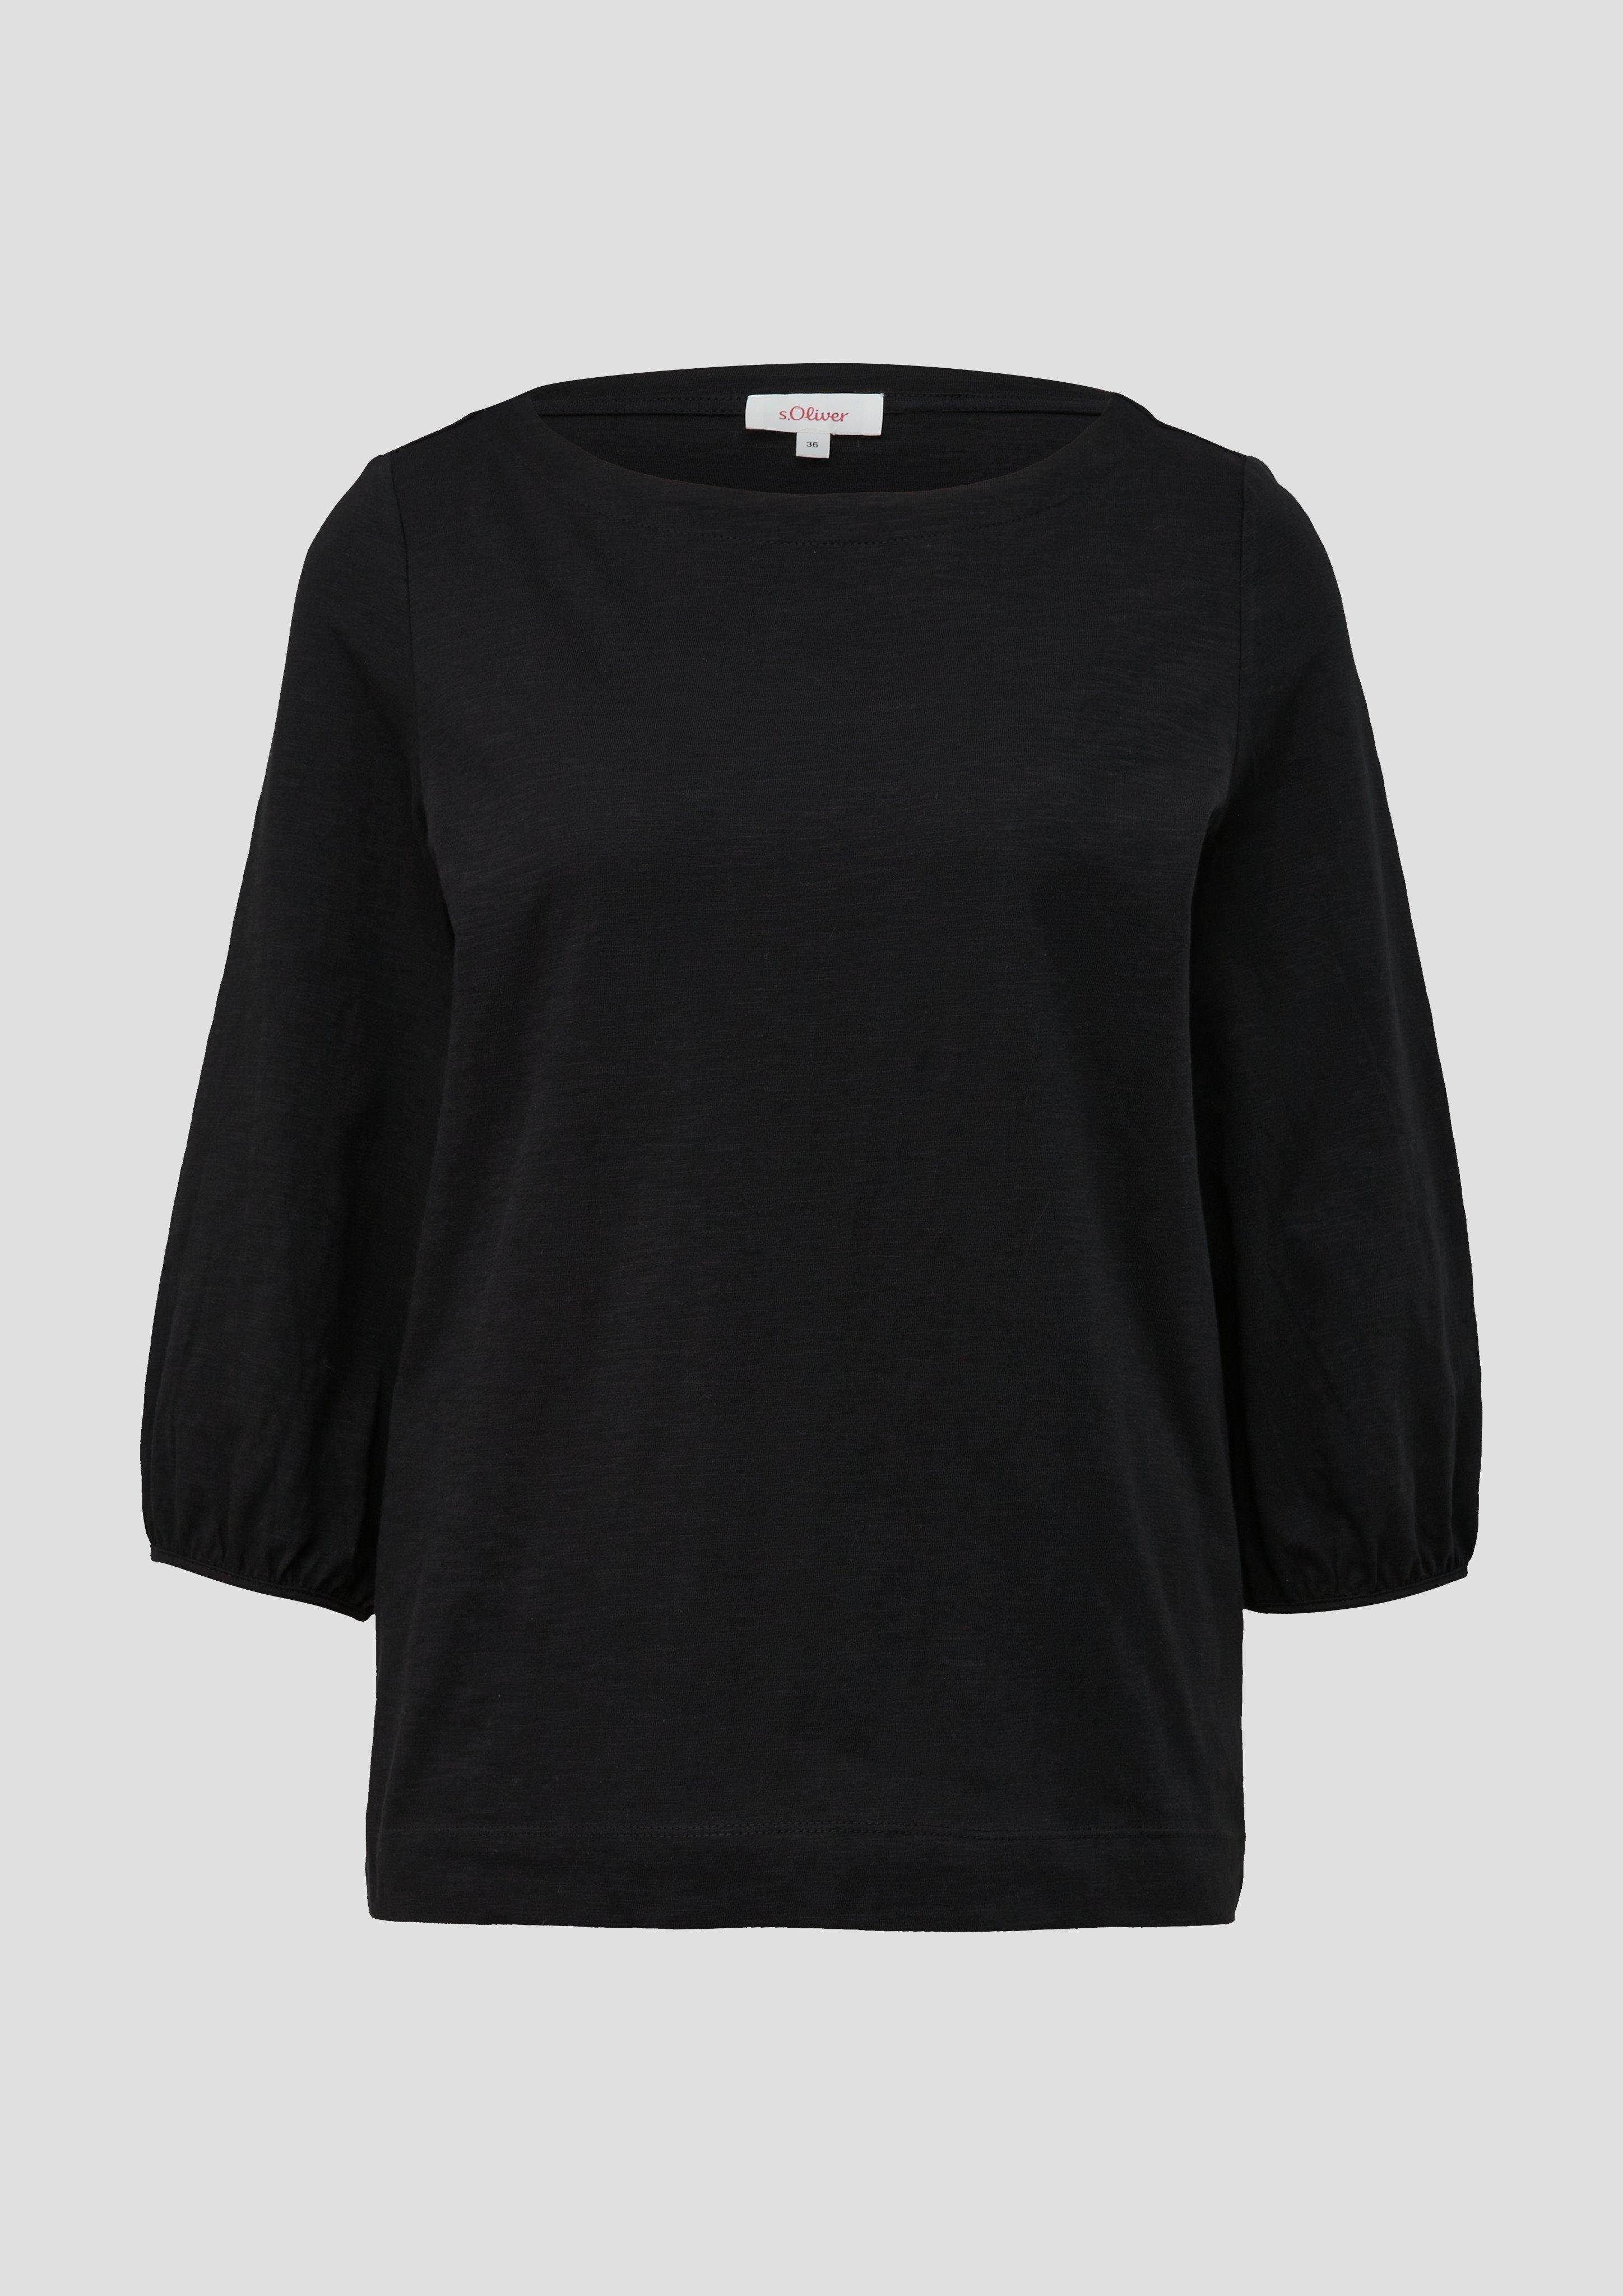 Baumwollshirt schwarz mit s.Oliver U-Boot-Ausschnitt 3/4-Arm-Shirt